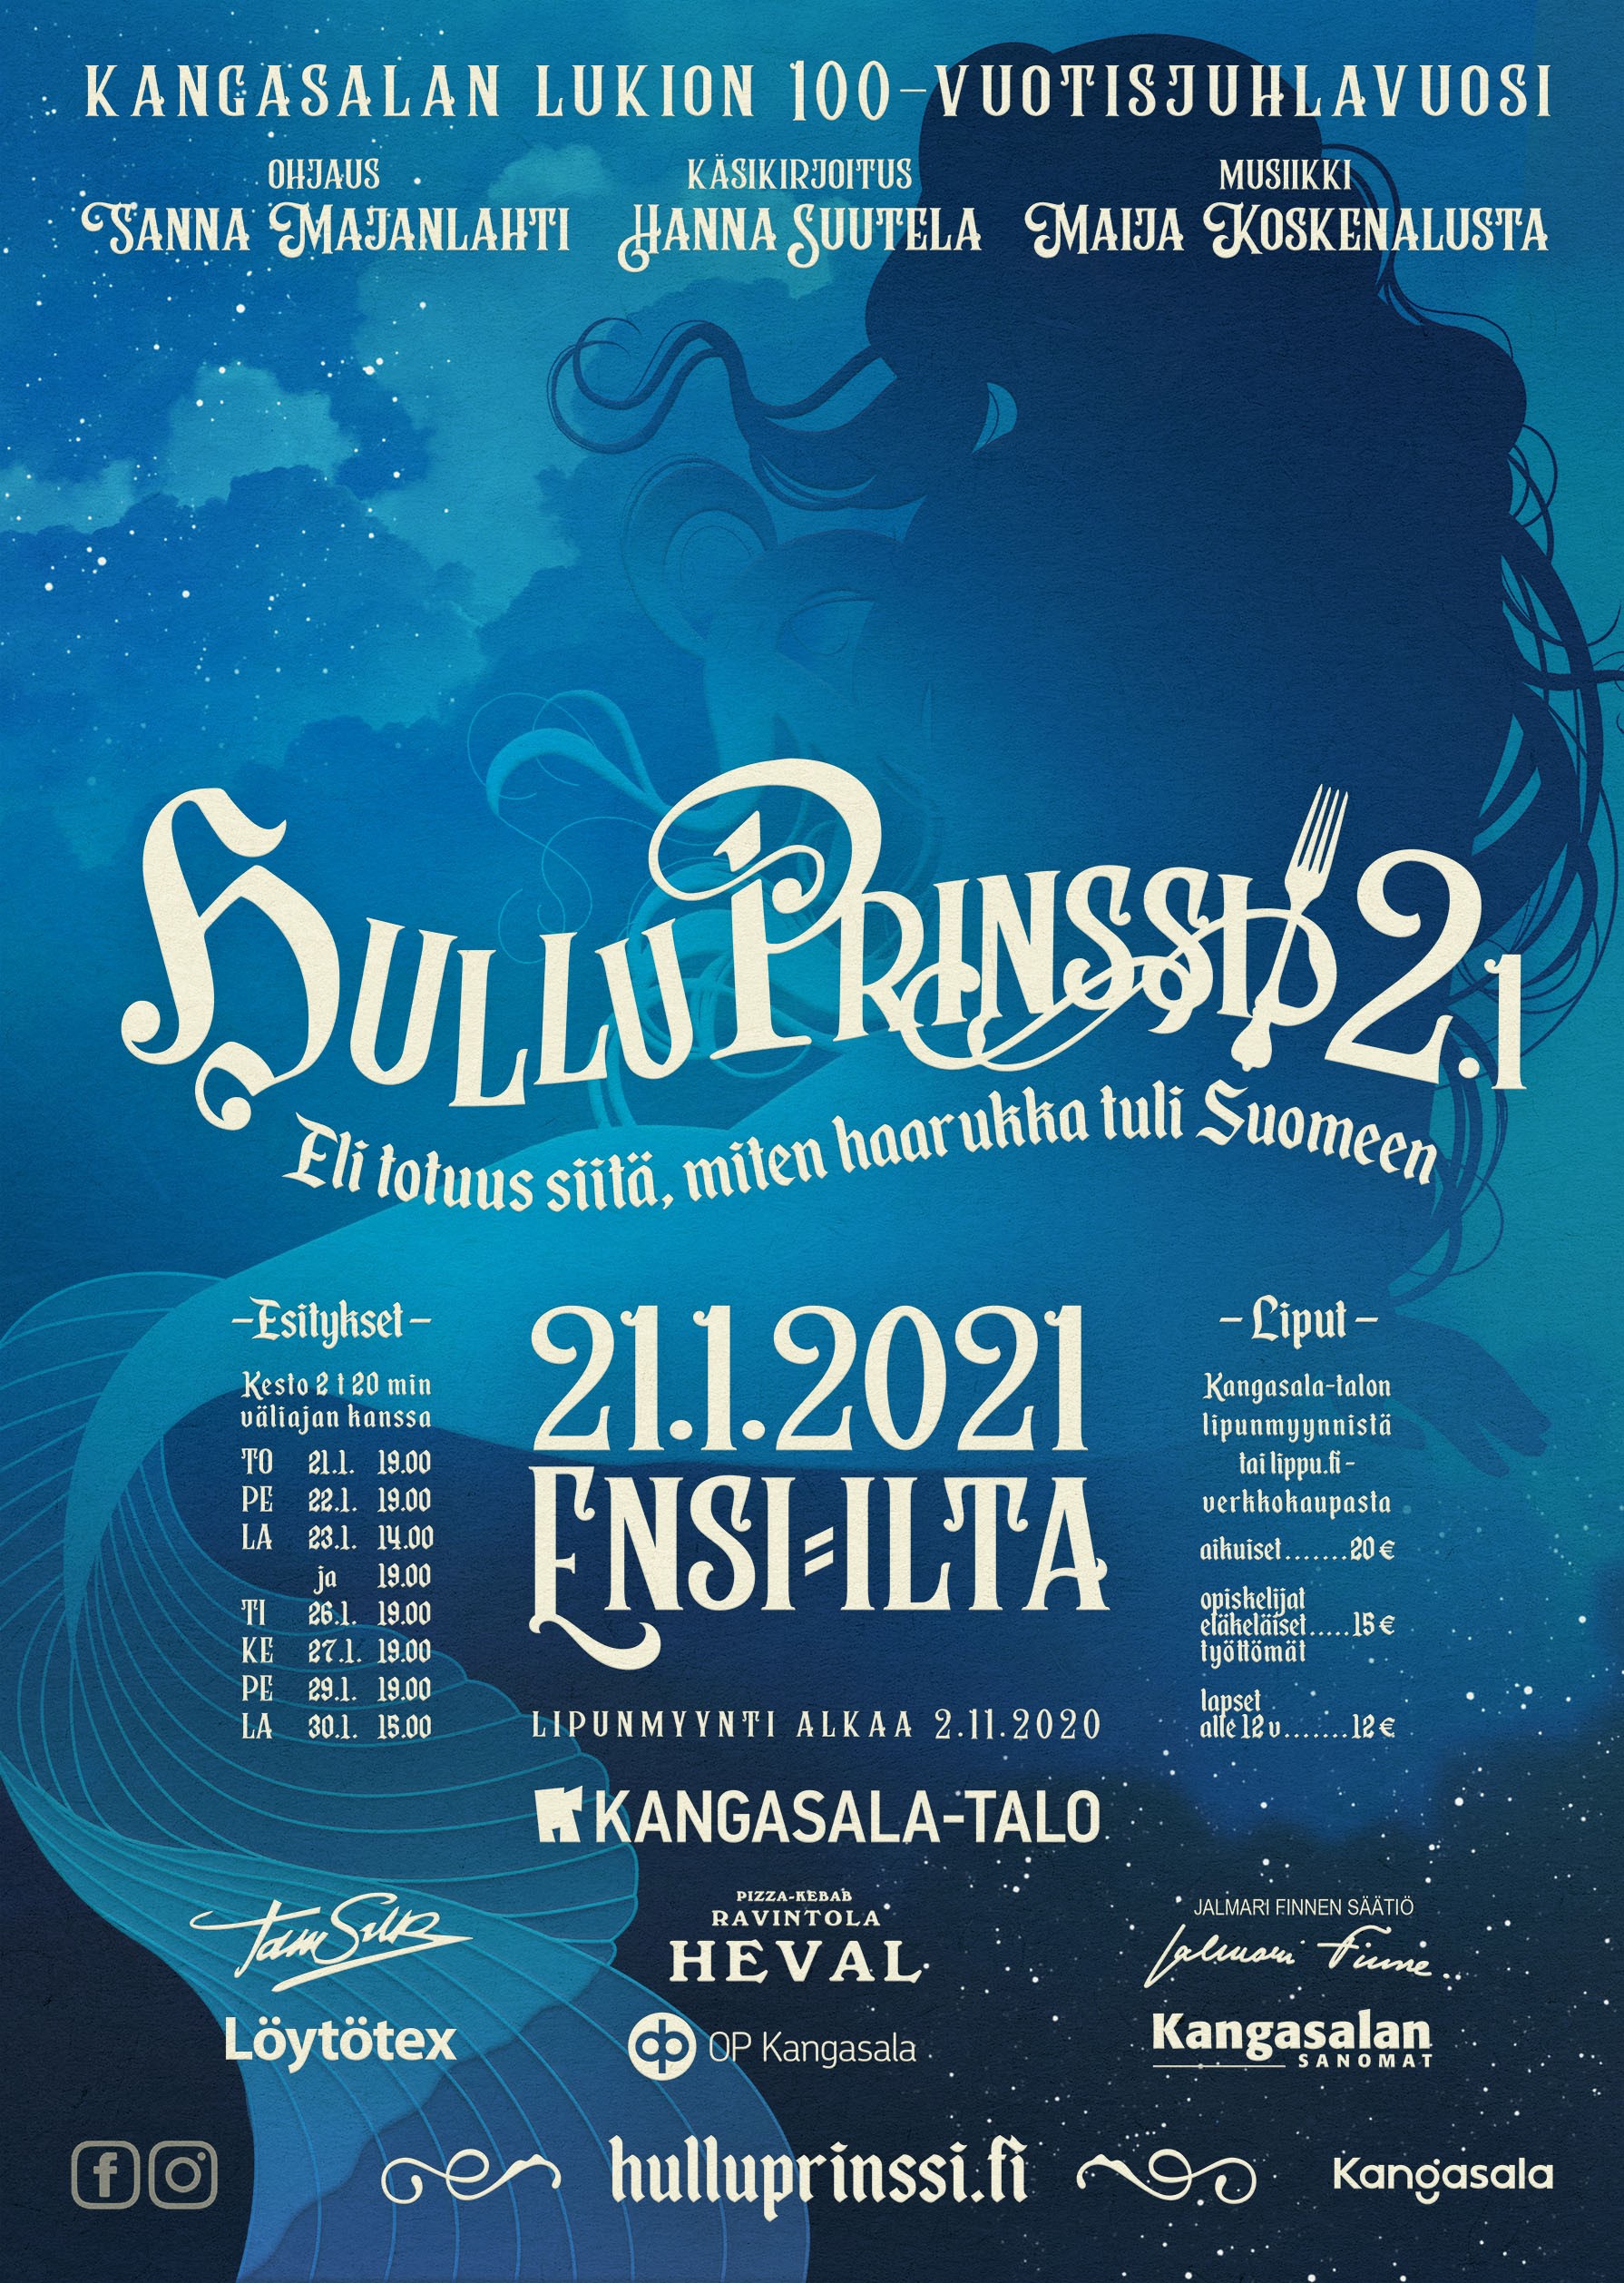 Menestysmusikaali Hullu Prinssi palaa Kangasala-talon lavalle uudessa kuosissa tammikuussa 2021!